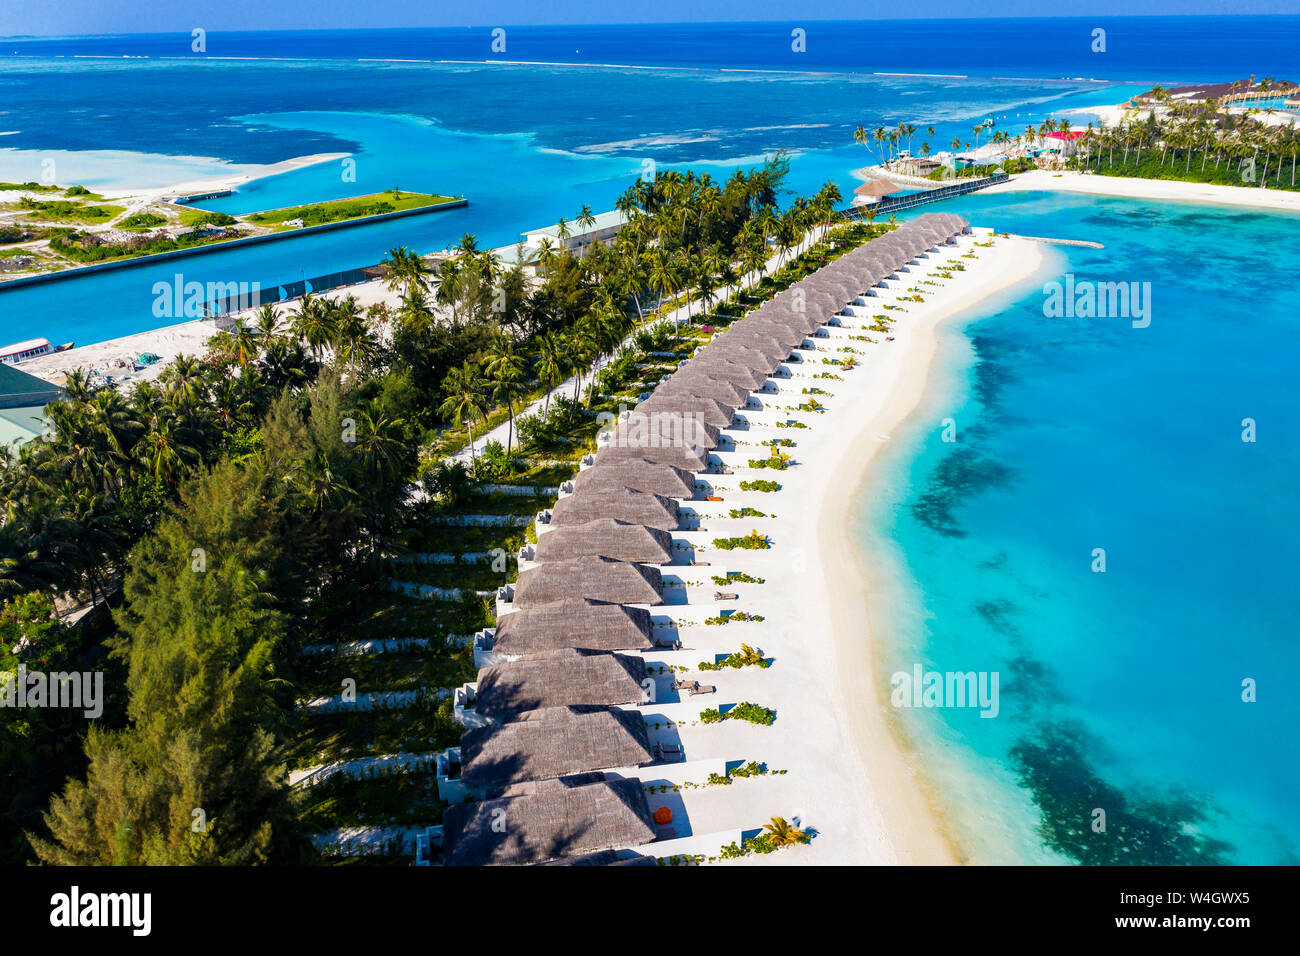 Vue aérienne de bungalows sur l'eau, Meeru Island, South Male Atoll, Maldives Banque D'Images